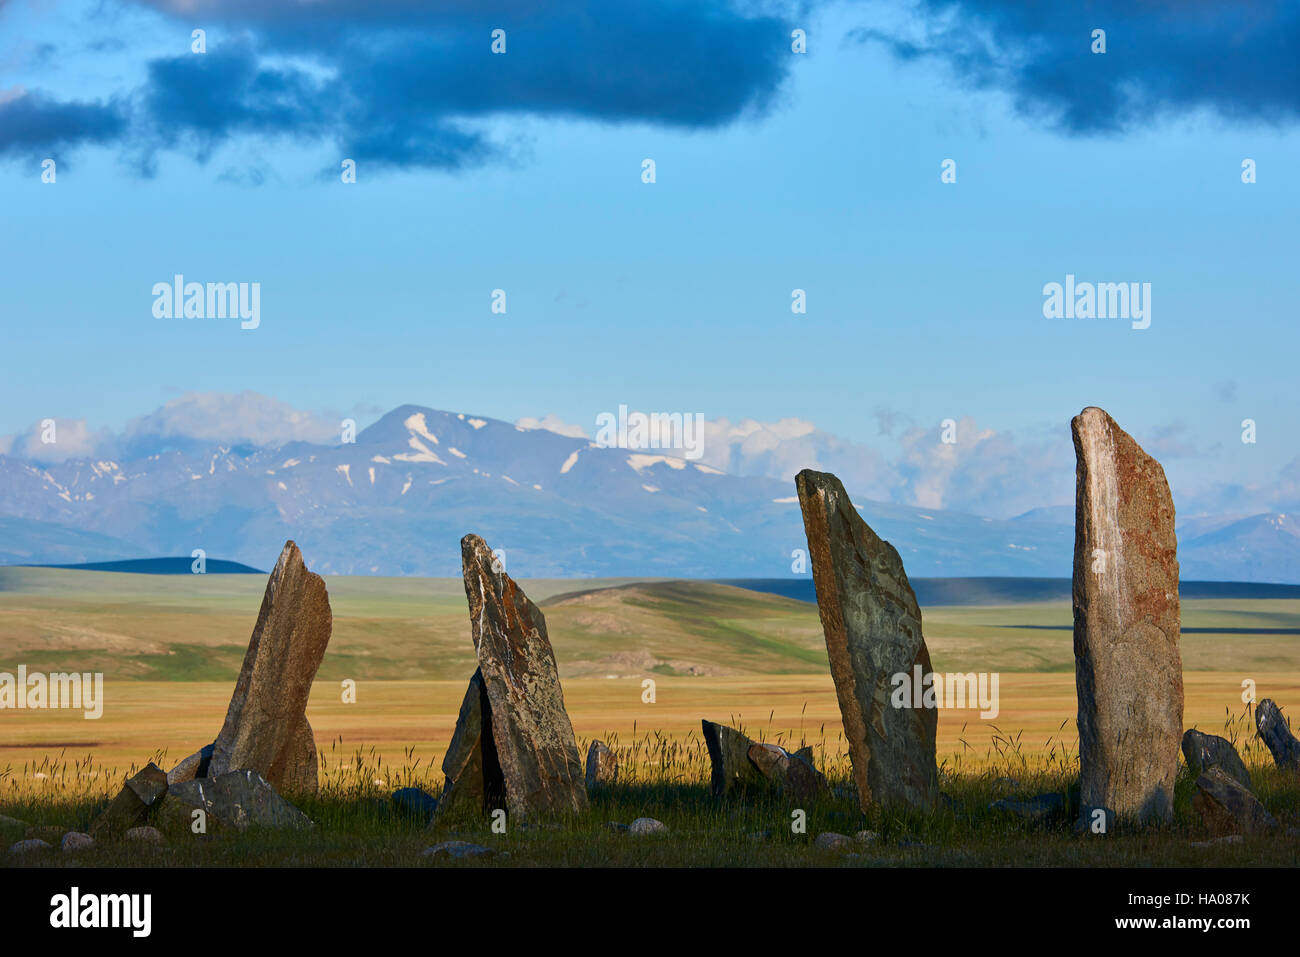 Mongolia, Bayan-Ulgii provincia, Mongolia occidentale, parco nazionale di Tavan Bogd, cervi pietra, sito funebre, monumento monolitico Foto Stock